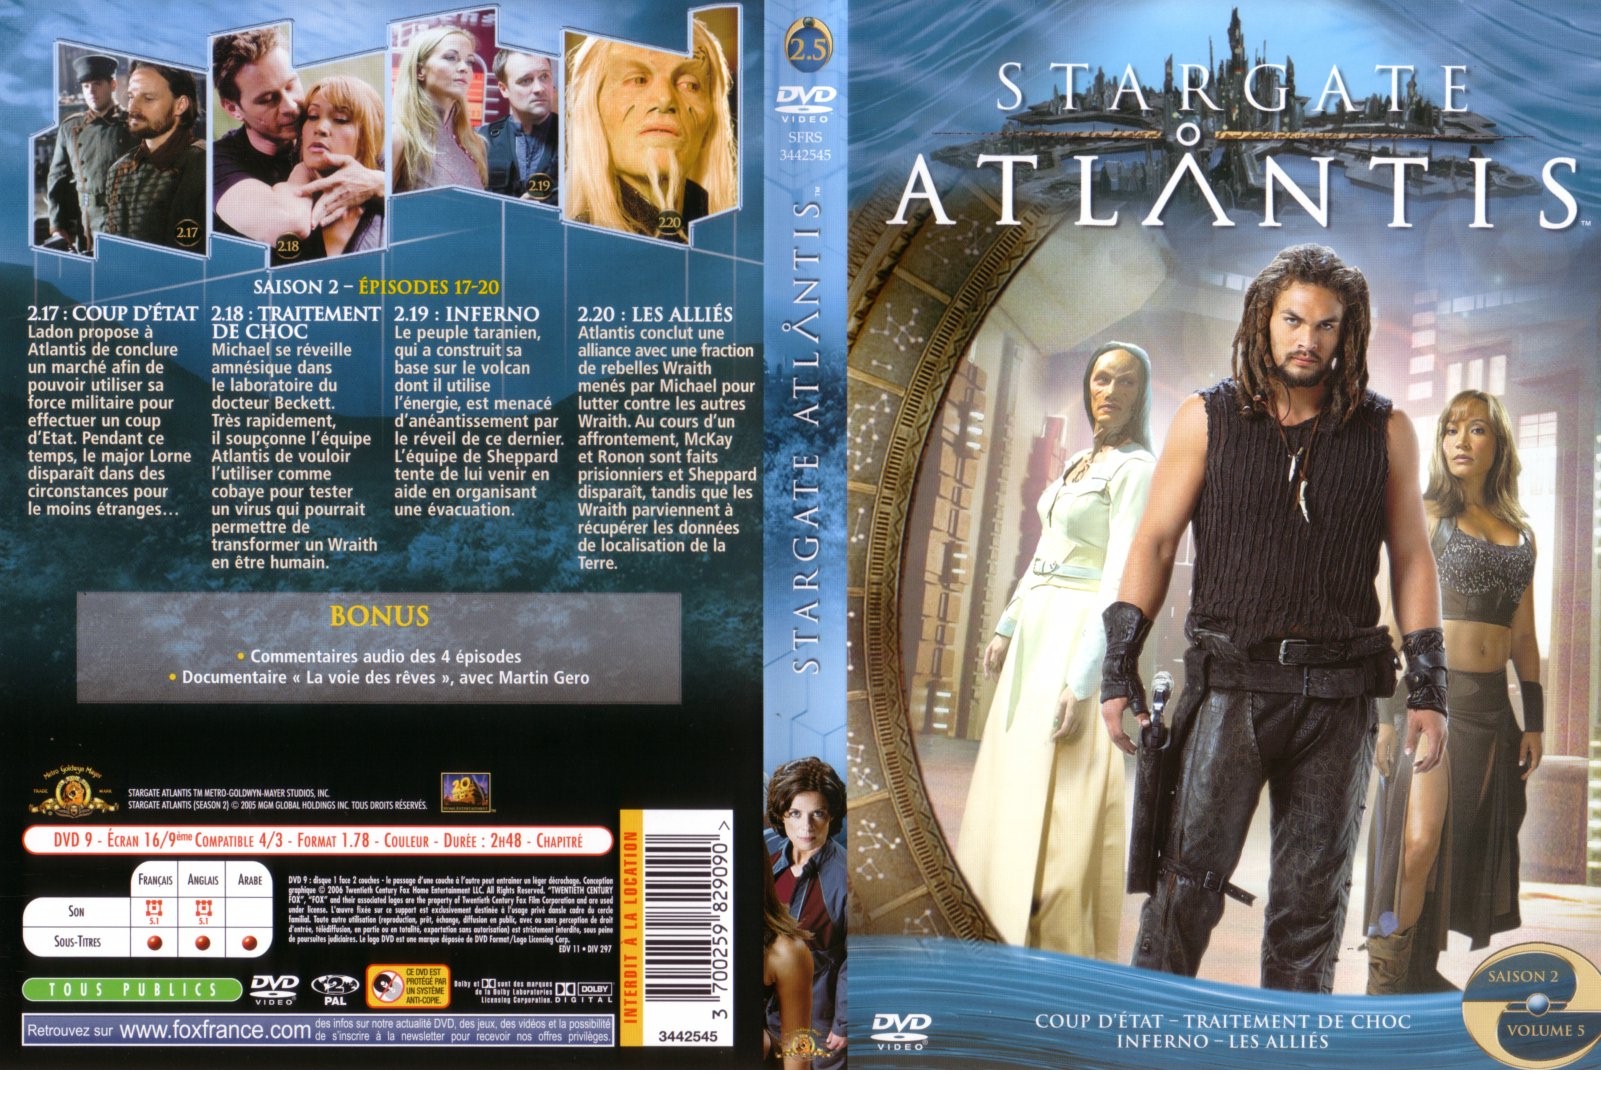 Jaquette DVD Stargate Atlantis saison 2 vol 5